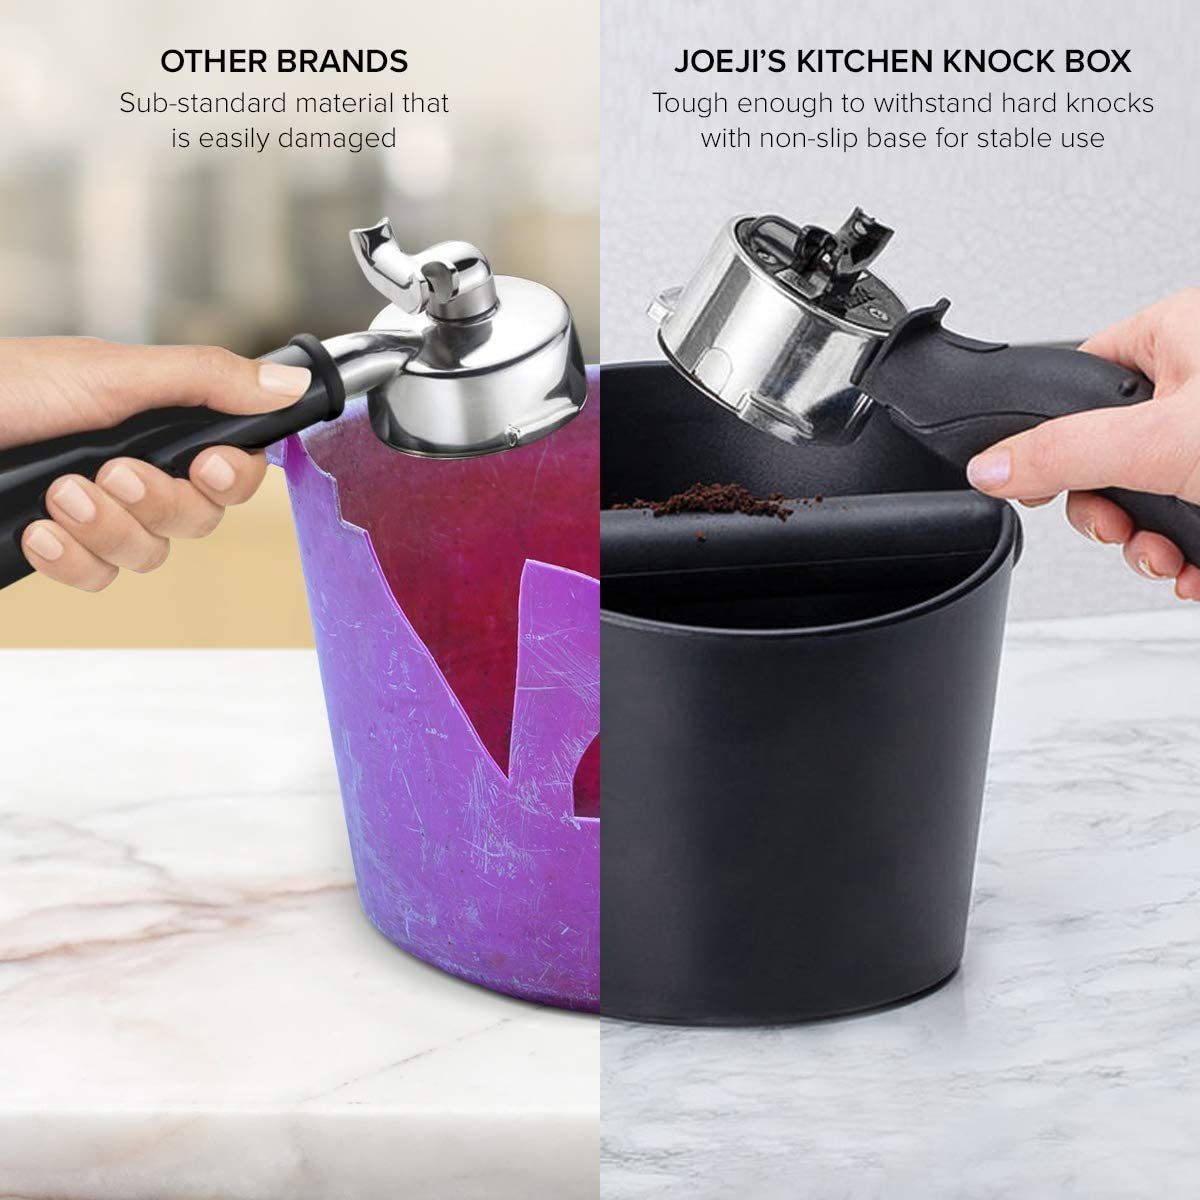 Kaffeeservice für Box Siebträger JOEJI’S Espresso Zubehör KITCHEN Abklopfbehälter Knock Maschinen